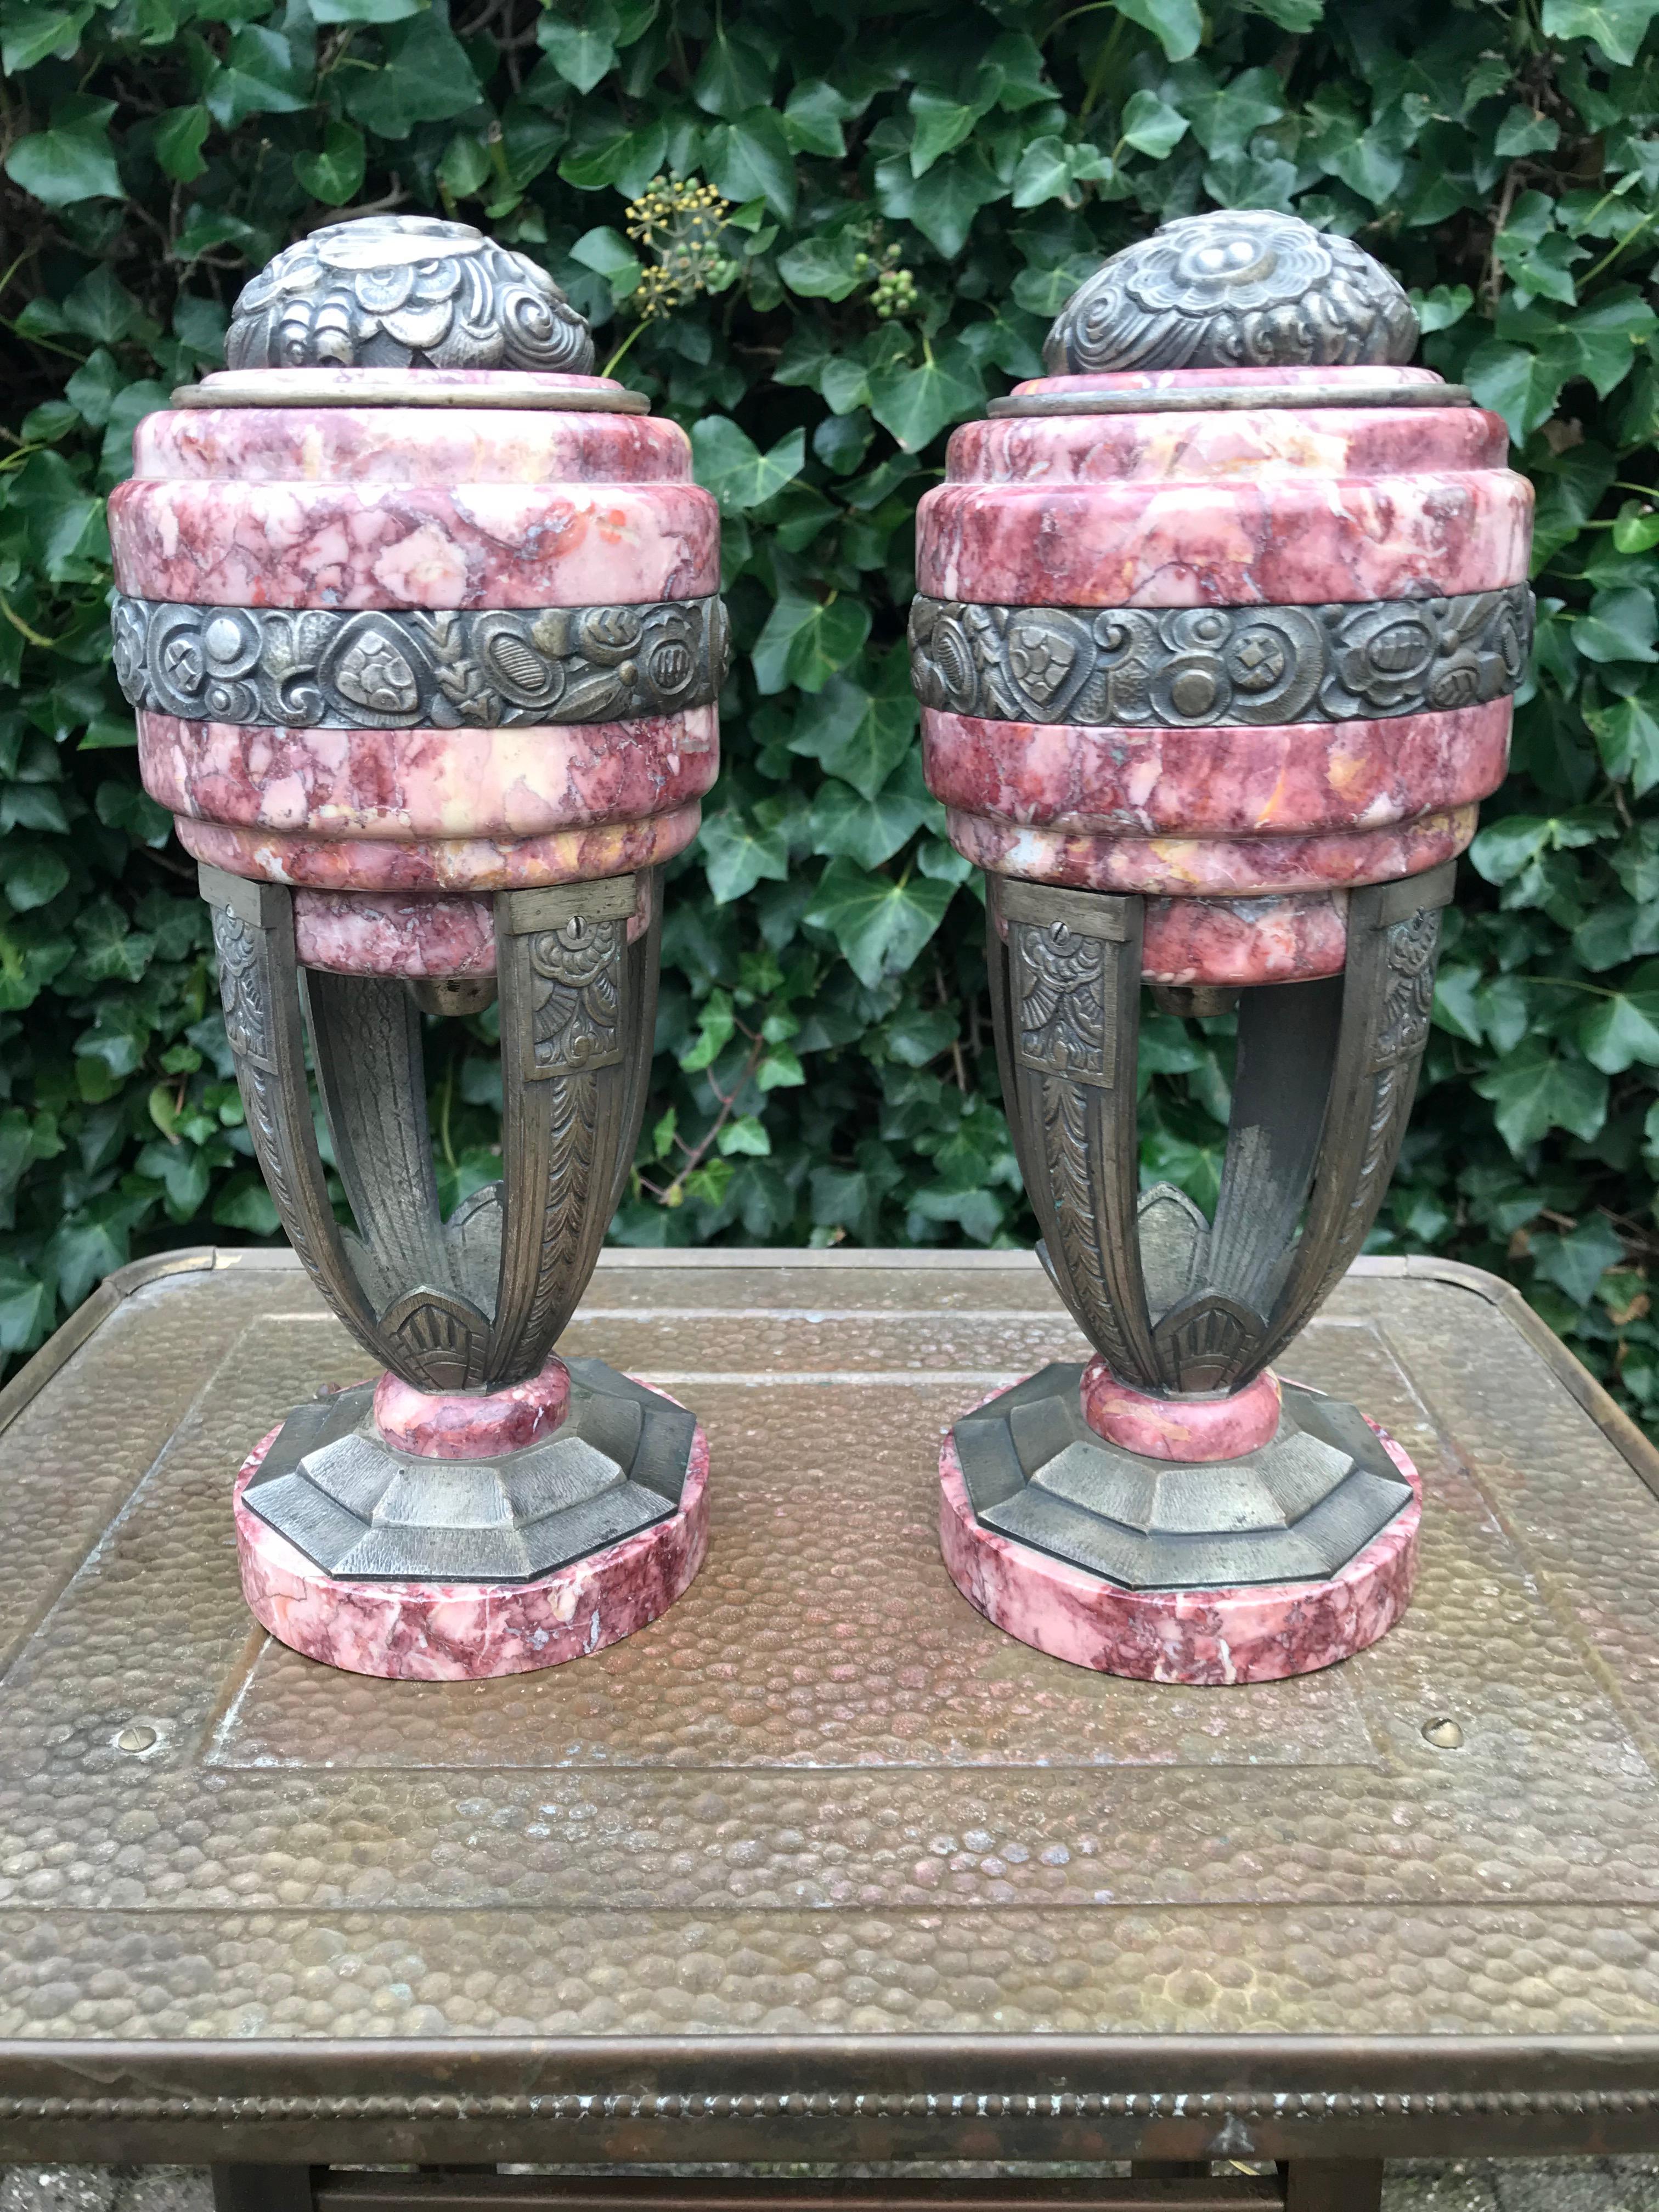 Stilvolle Art-Déco-Urnen:: Handwerkskunst aus der Zeit um 1900 und ein Schnäppchen für Sammler. 

Diese wunderschönen Cassolettes sind in Qualität und Zustand eine absolute Freude zu besitzen und zu betrachten. Die Kombination aus wunderschönem